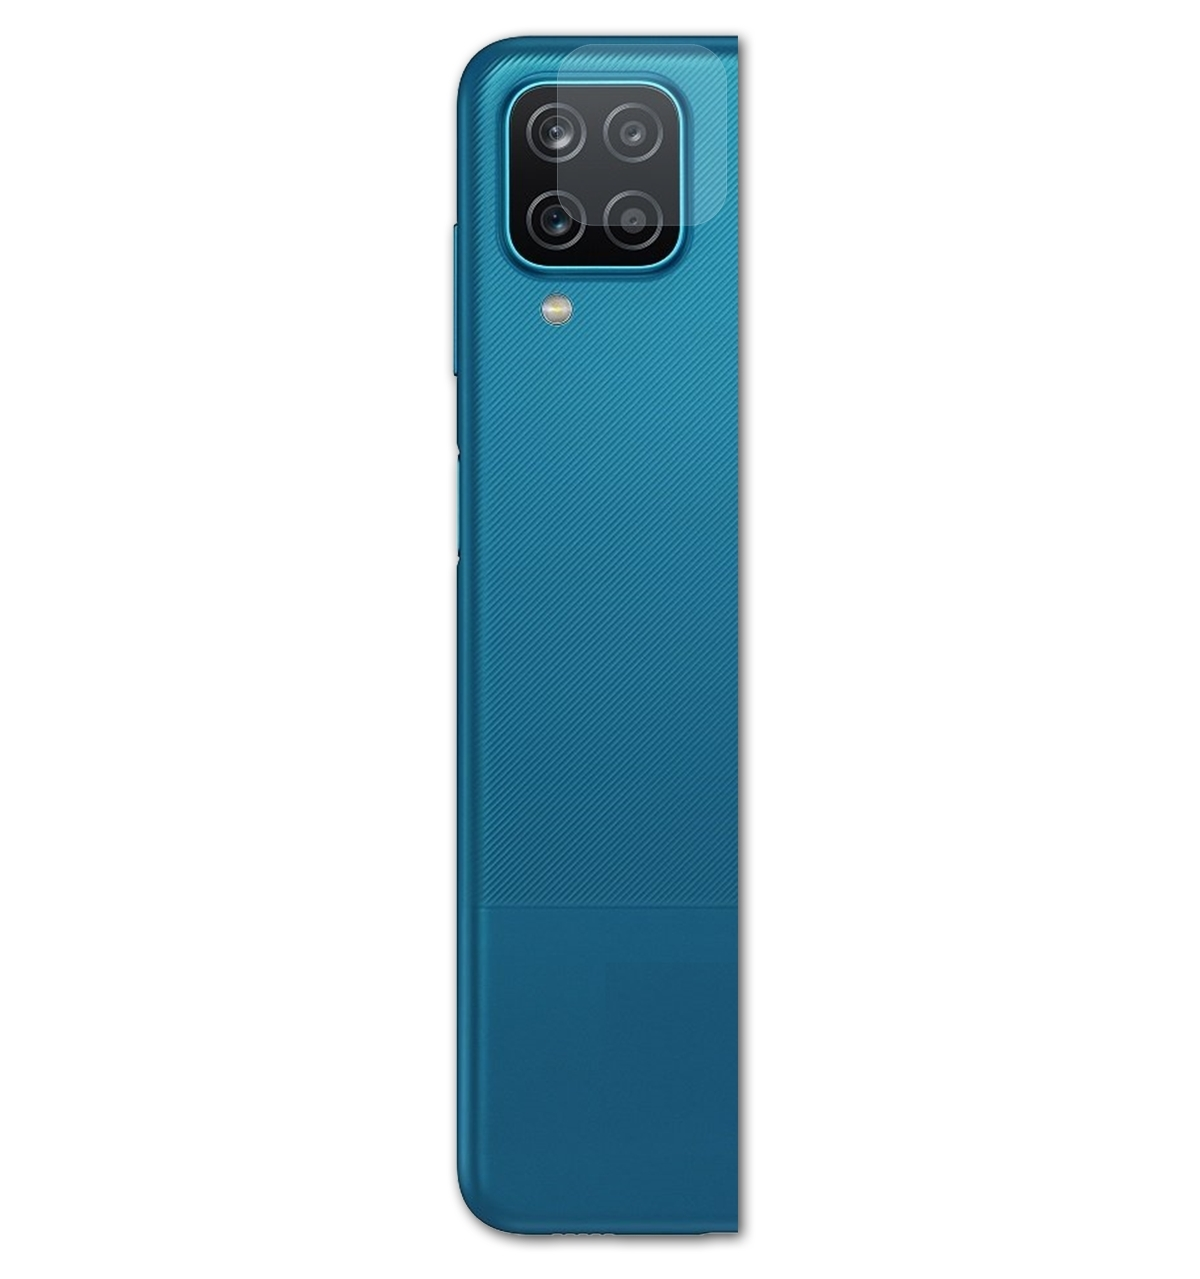 Samsung A12 Galaxy Nacho Displayschutz(für FX-Clear 3x Lens) ATFOLIX